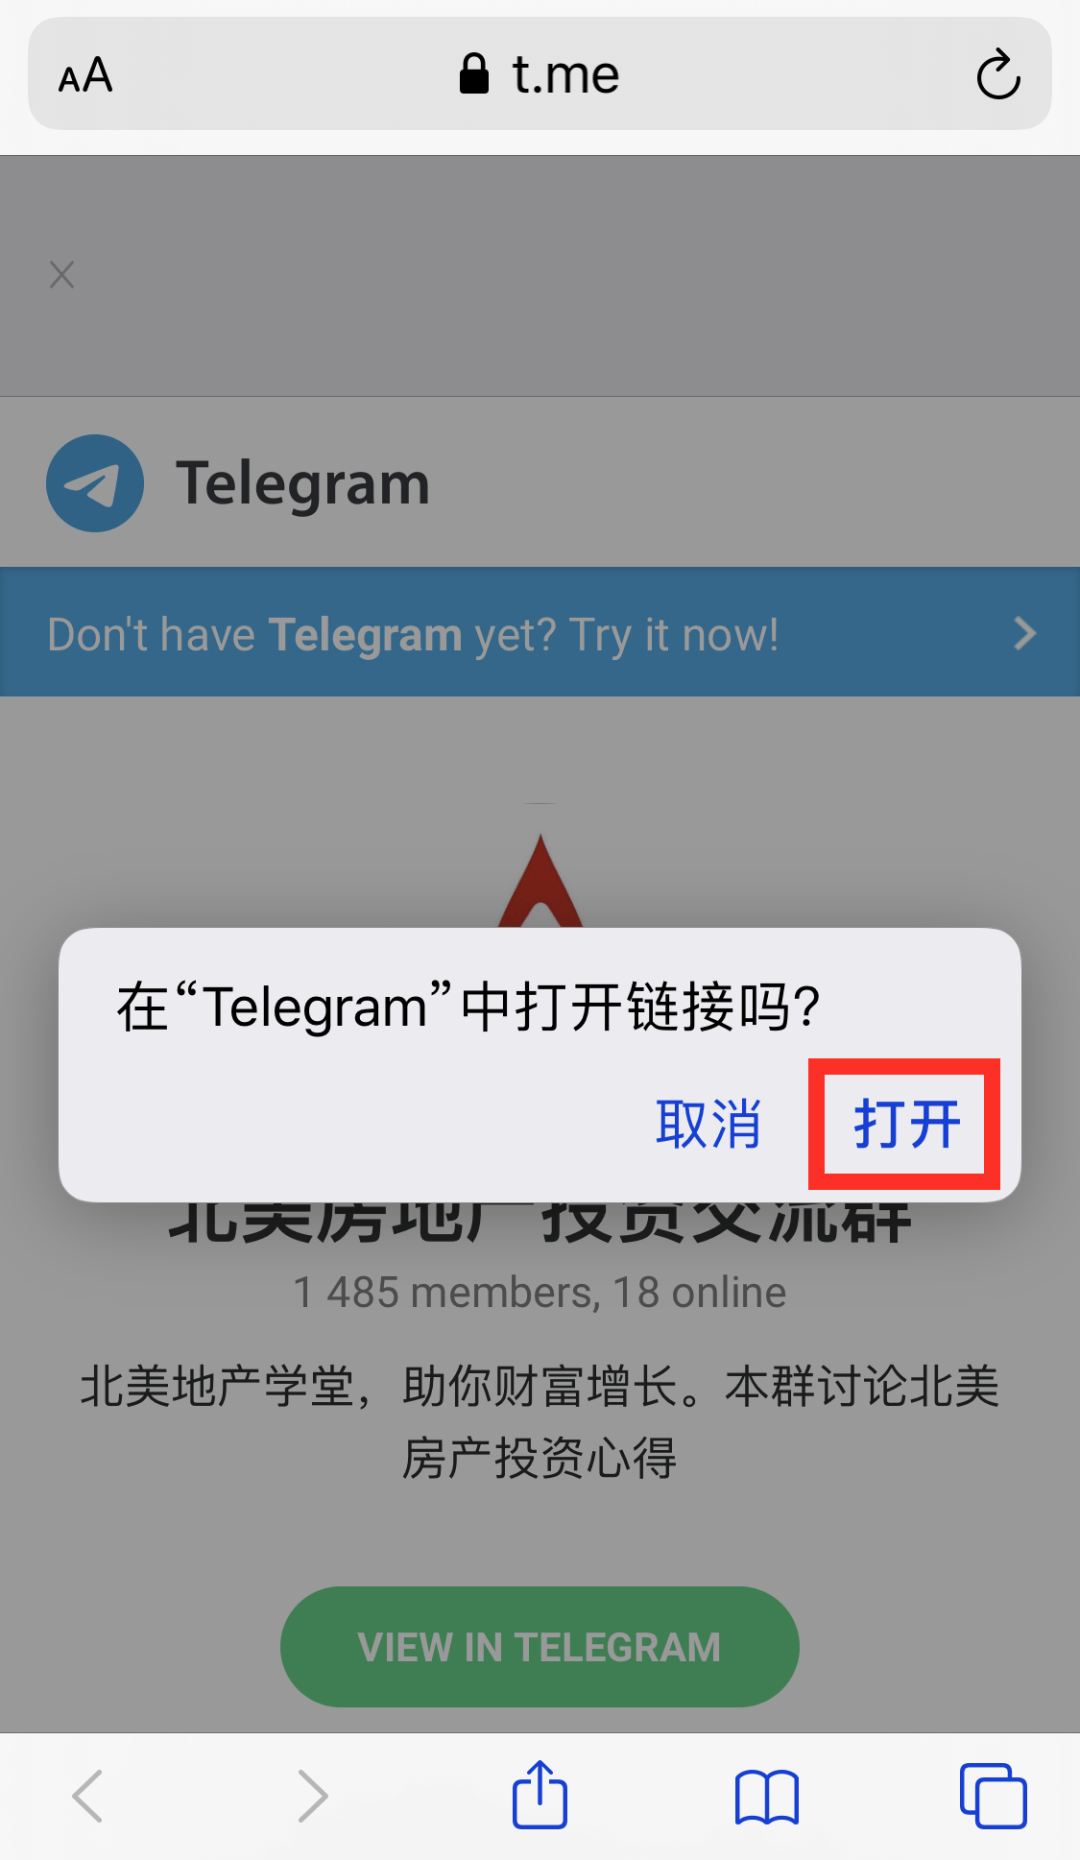 [telegeram在中国可以用吗]telegram可以直接在中国用吗